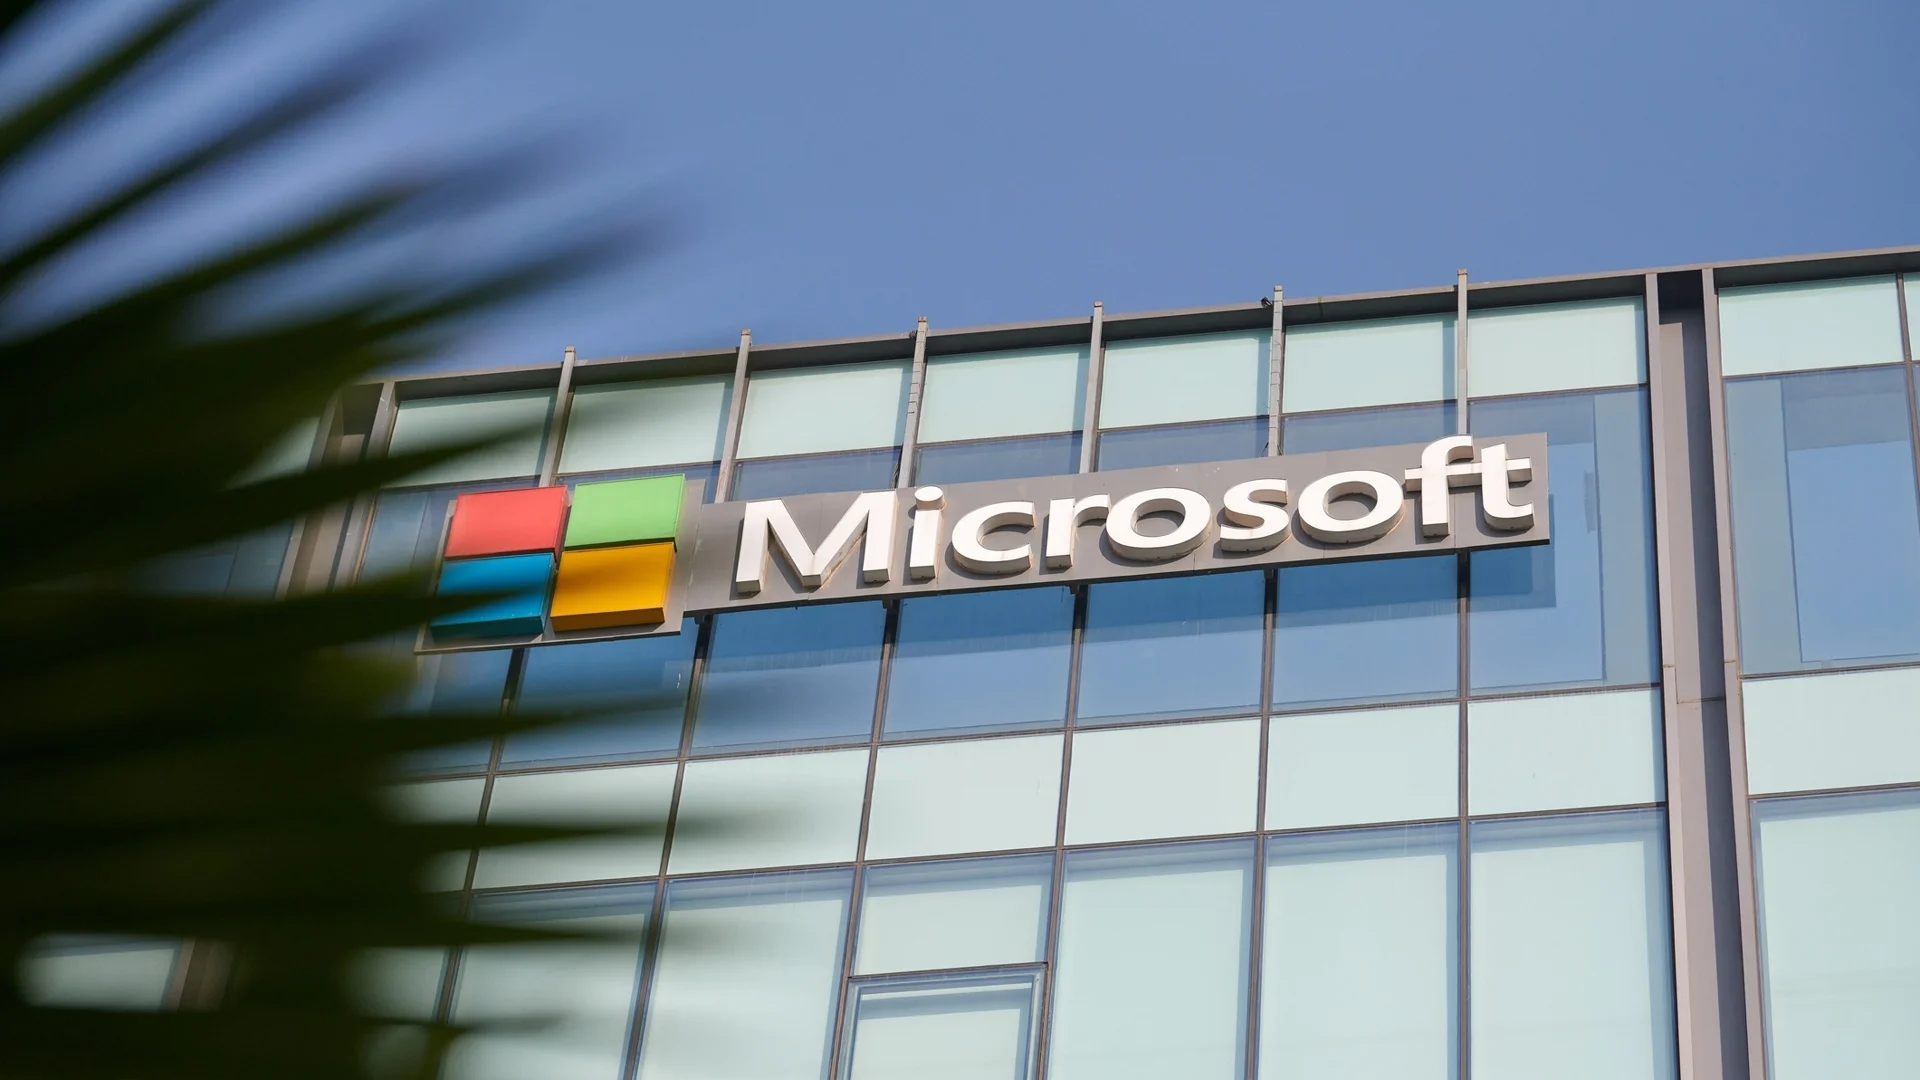 Microsoft разделя Teams от Office пакета в глобален мащаб 